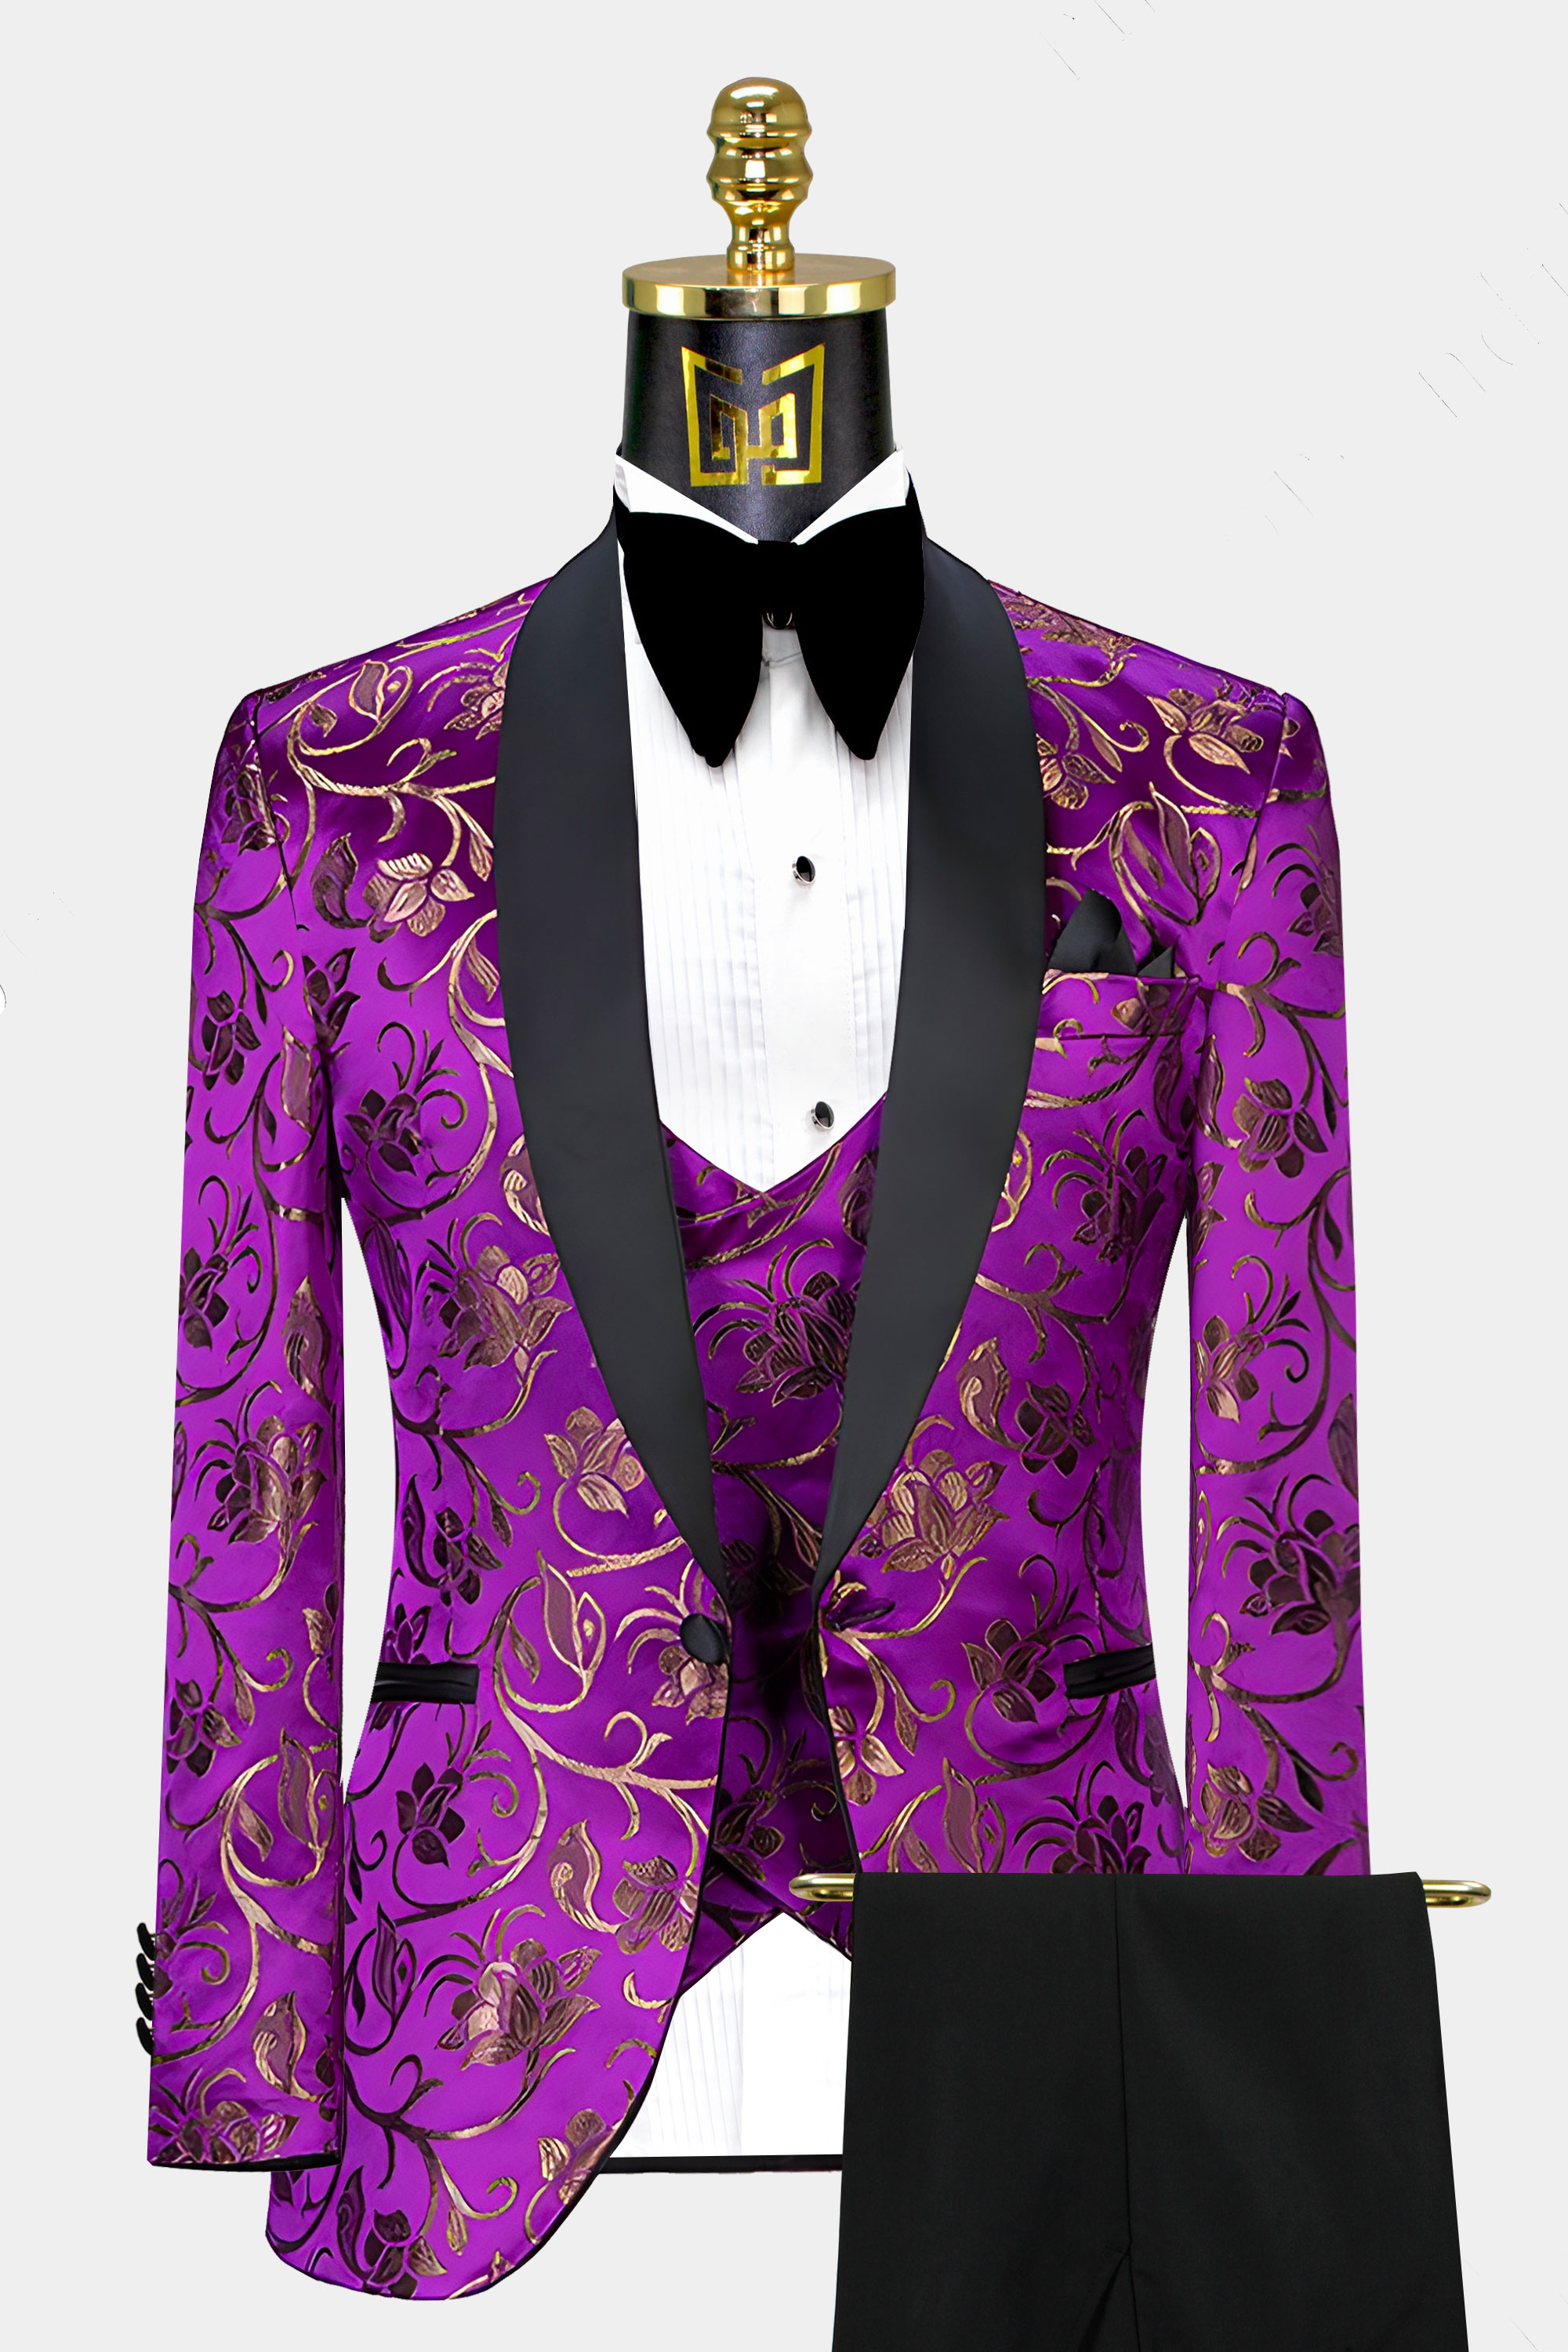 Purple-and-Gold-Groom-Wedding-Suit-Prom-Tuxedo-from-Gentlemansguru.com